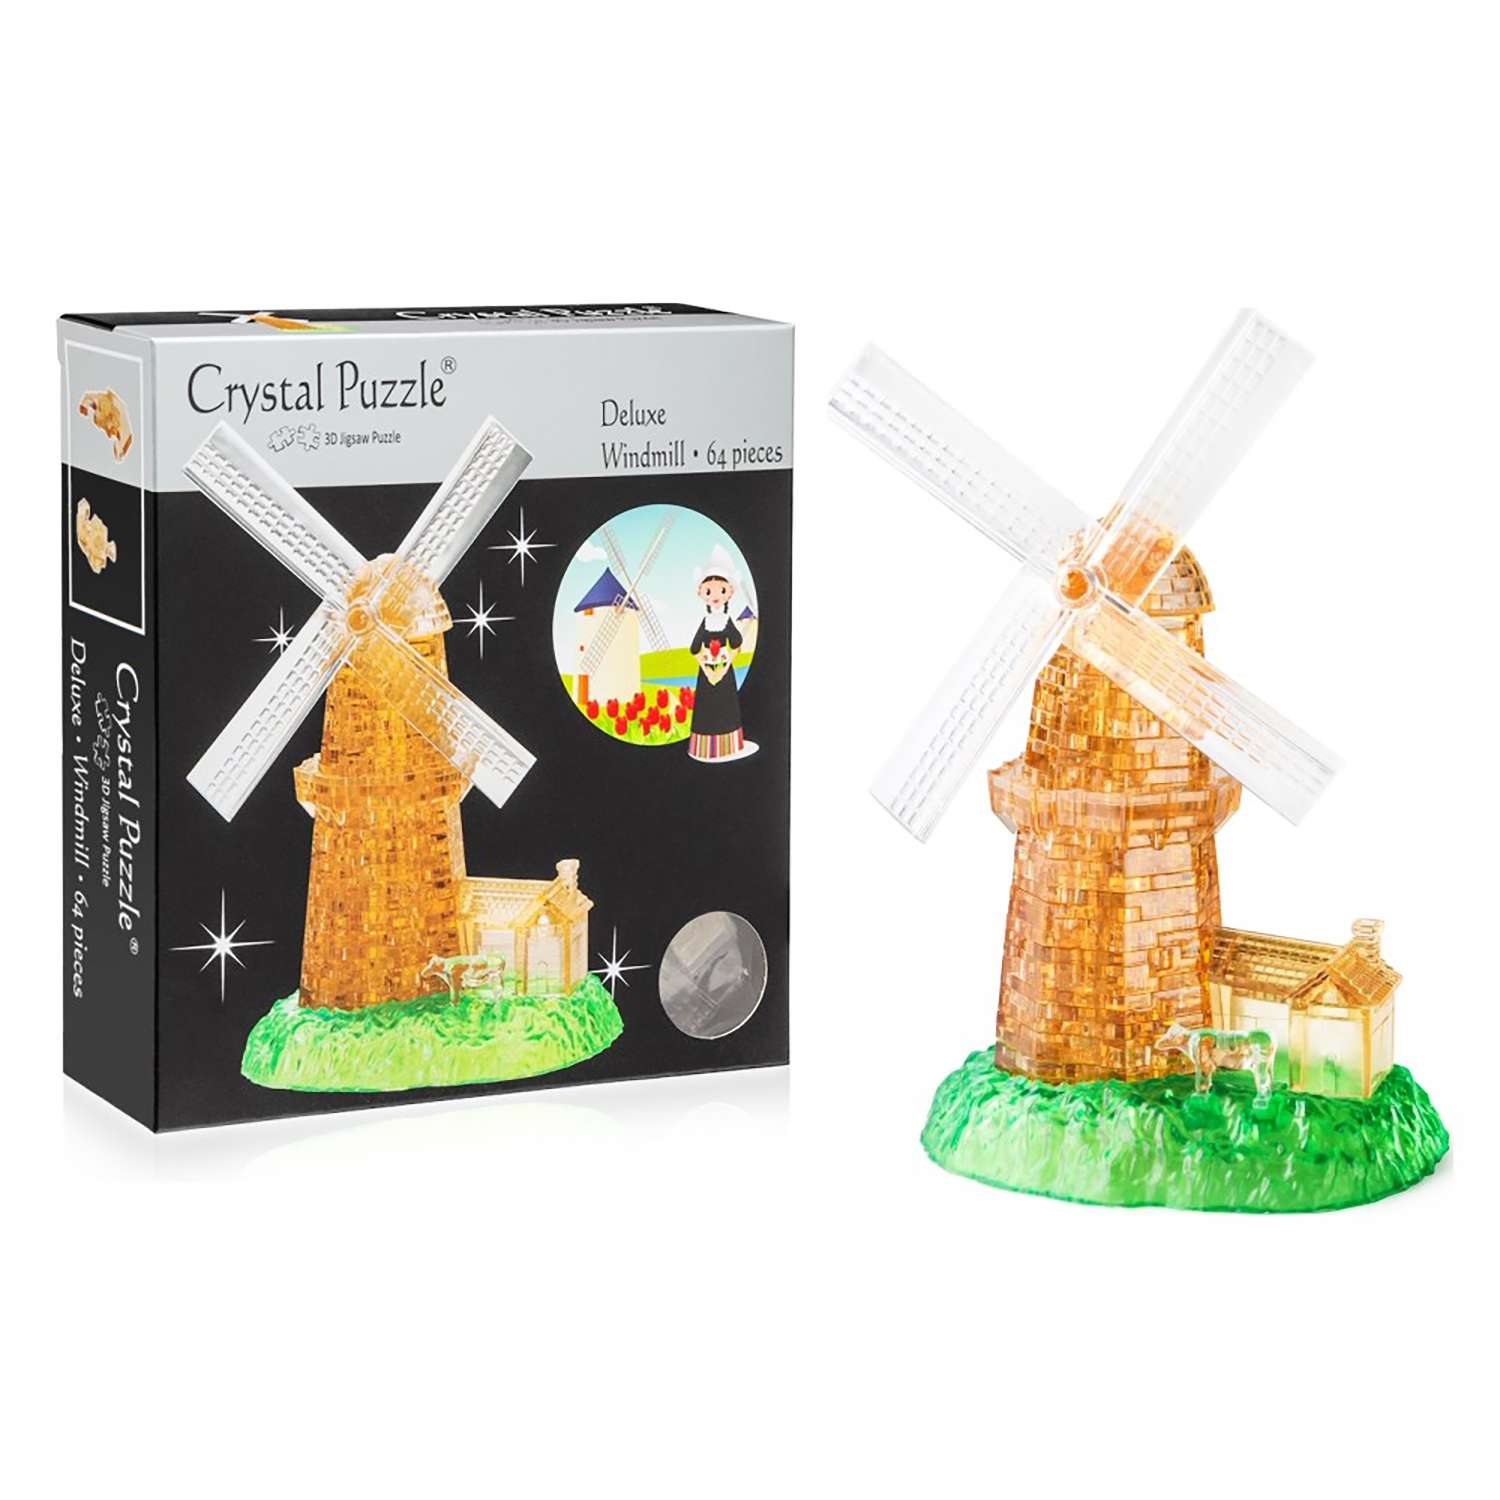 3D-пазл Crystal Puzzle IQ игра для детей кристальная Мельница 64 детали - фото 2